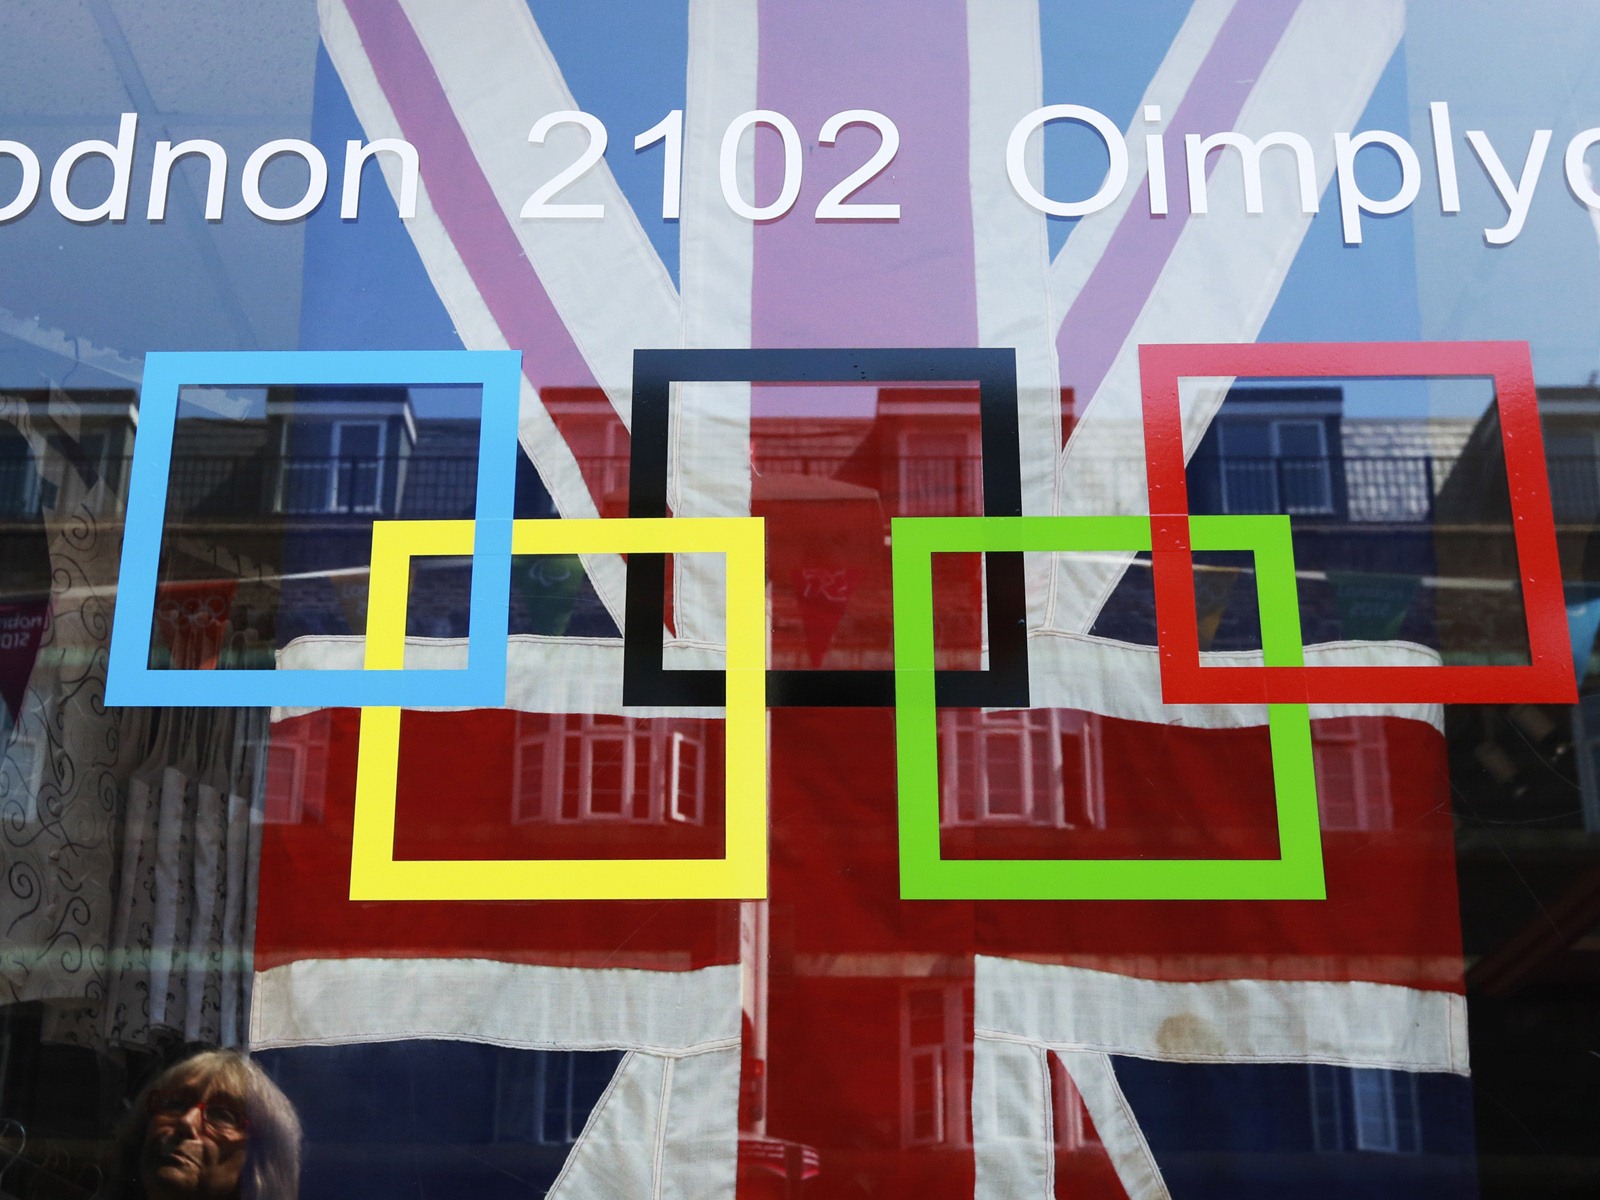 Londres 2012 Olimpiadas fondos temáticos (2) #27 - 1600x1200